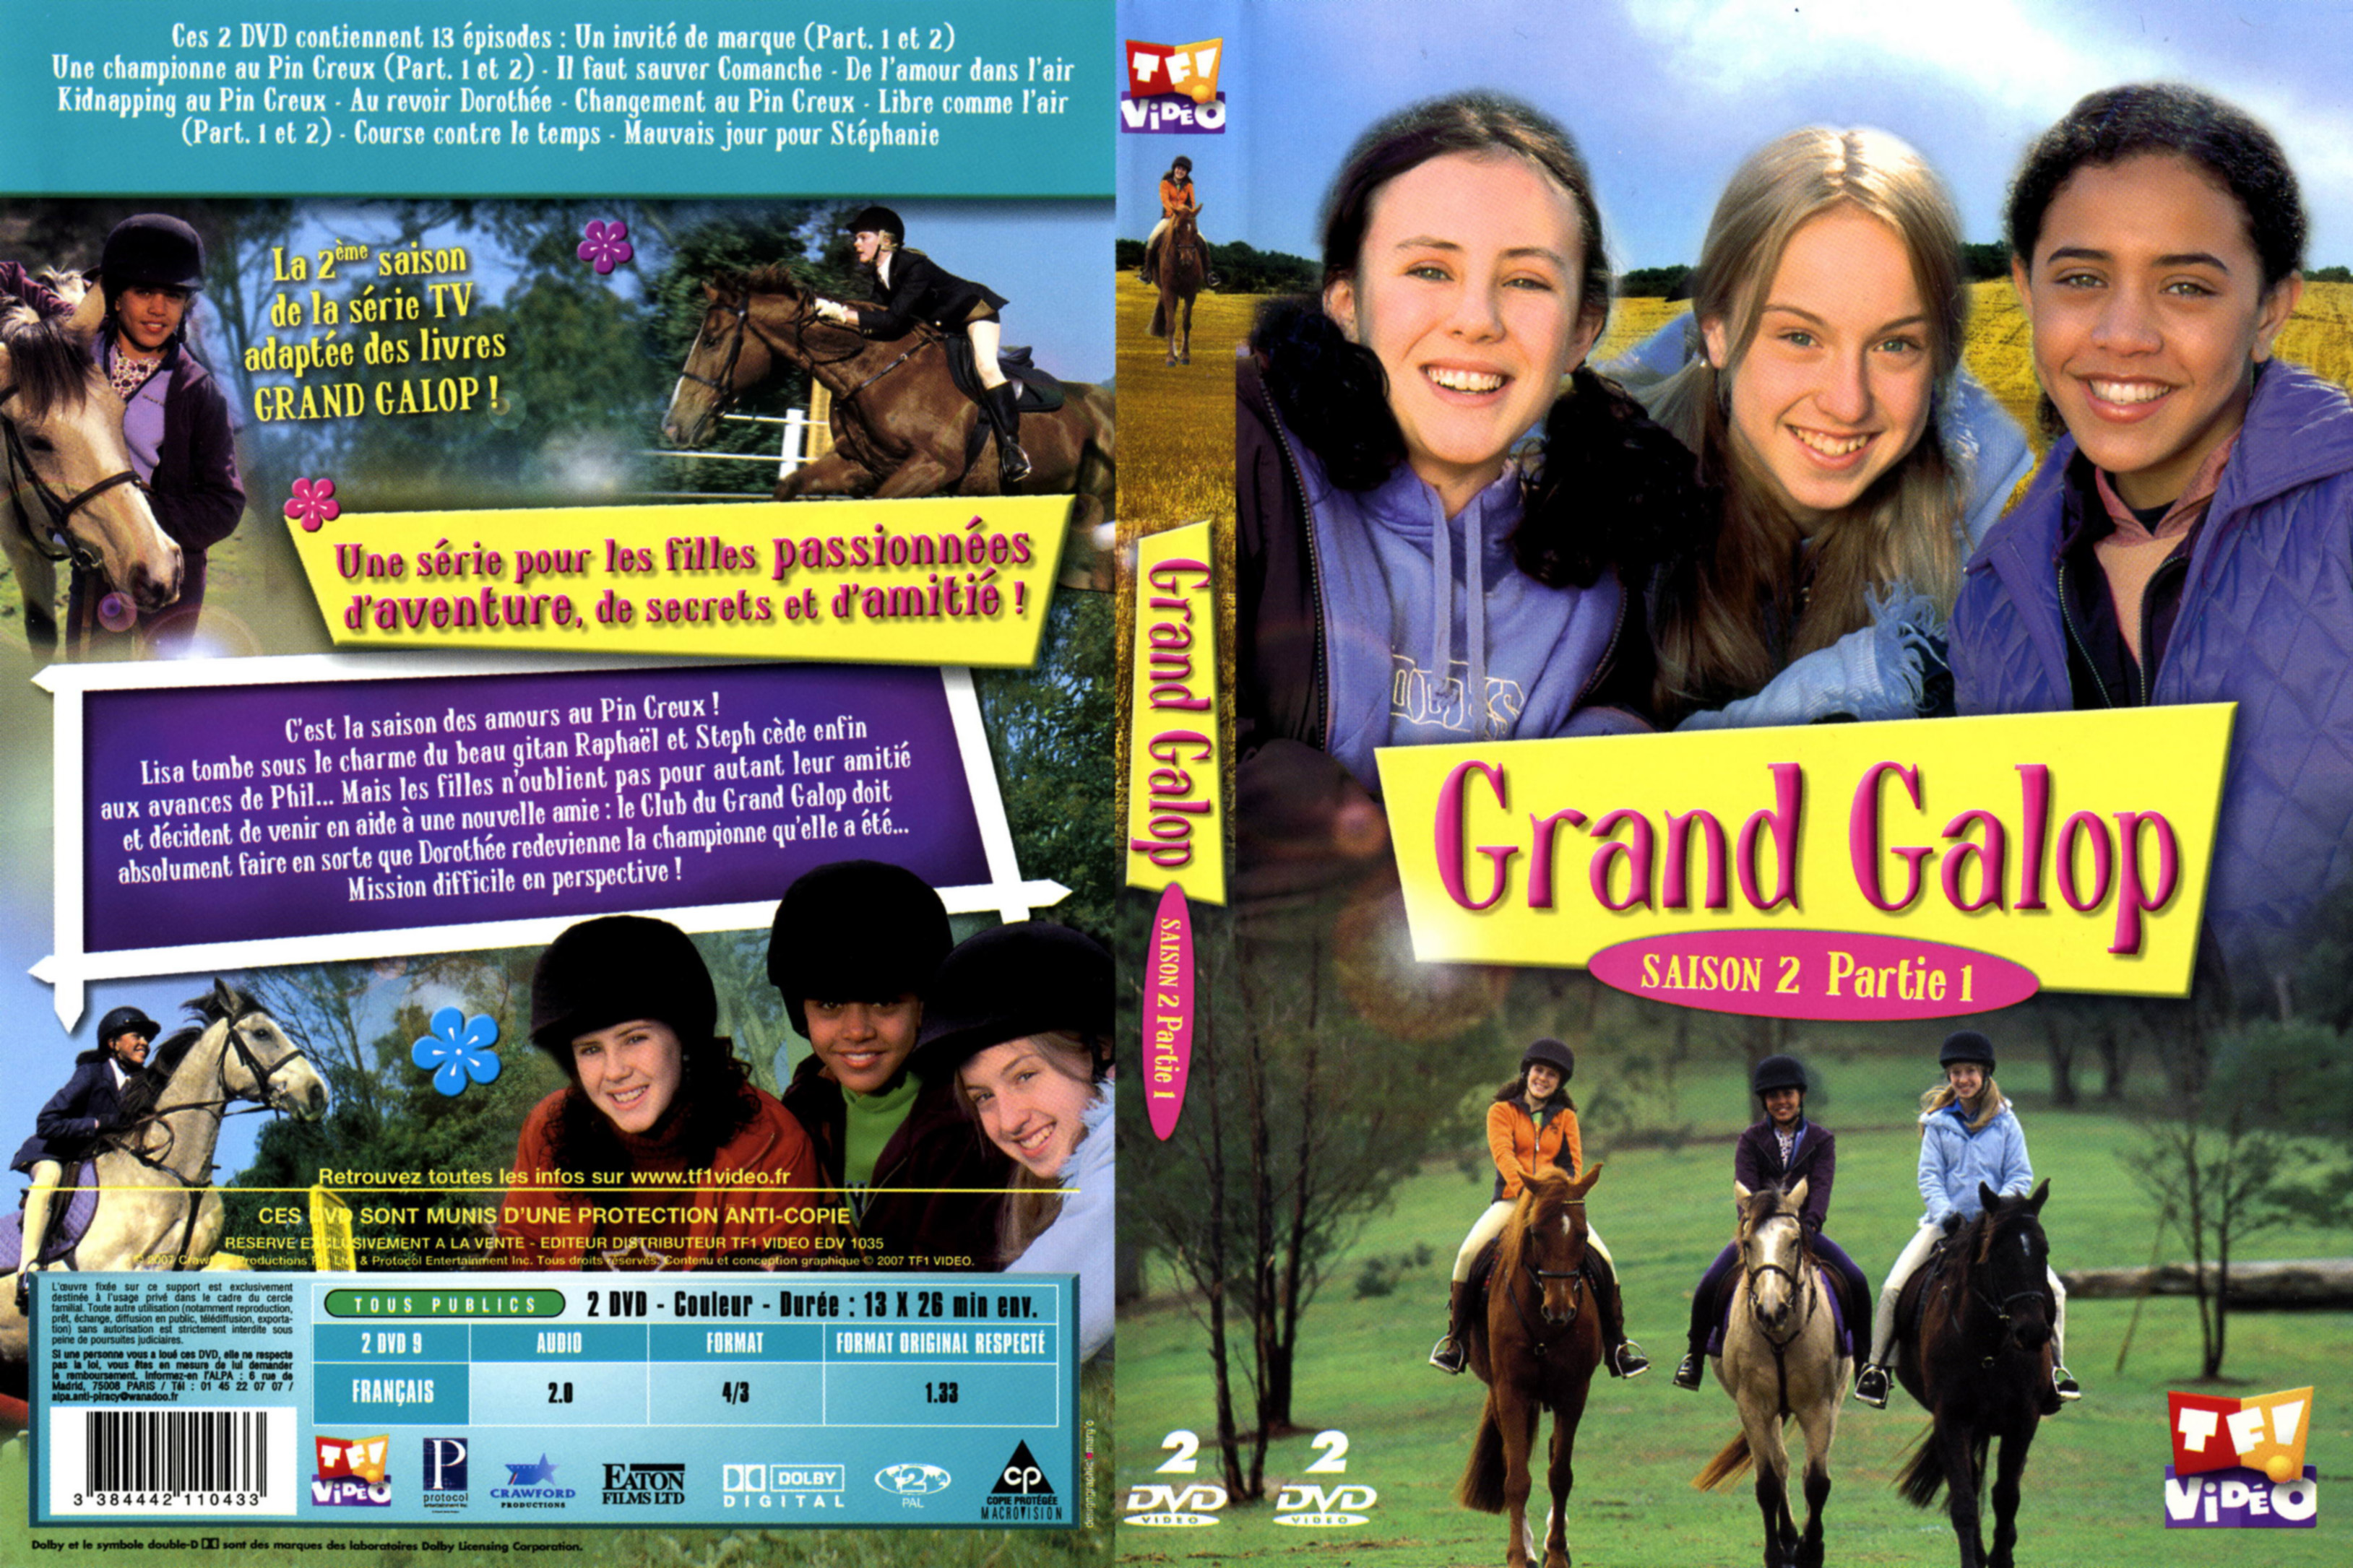 Jaquette DVD Grand galop Saison 2 Partie 1